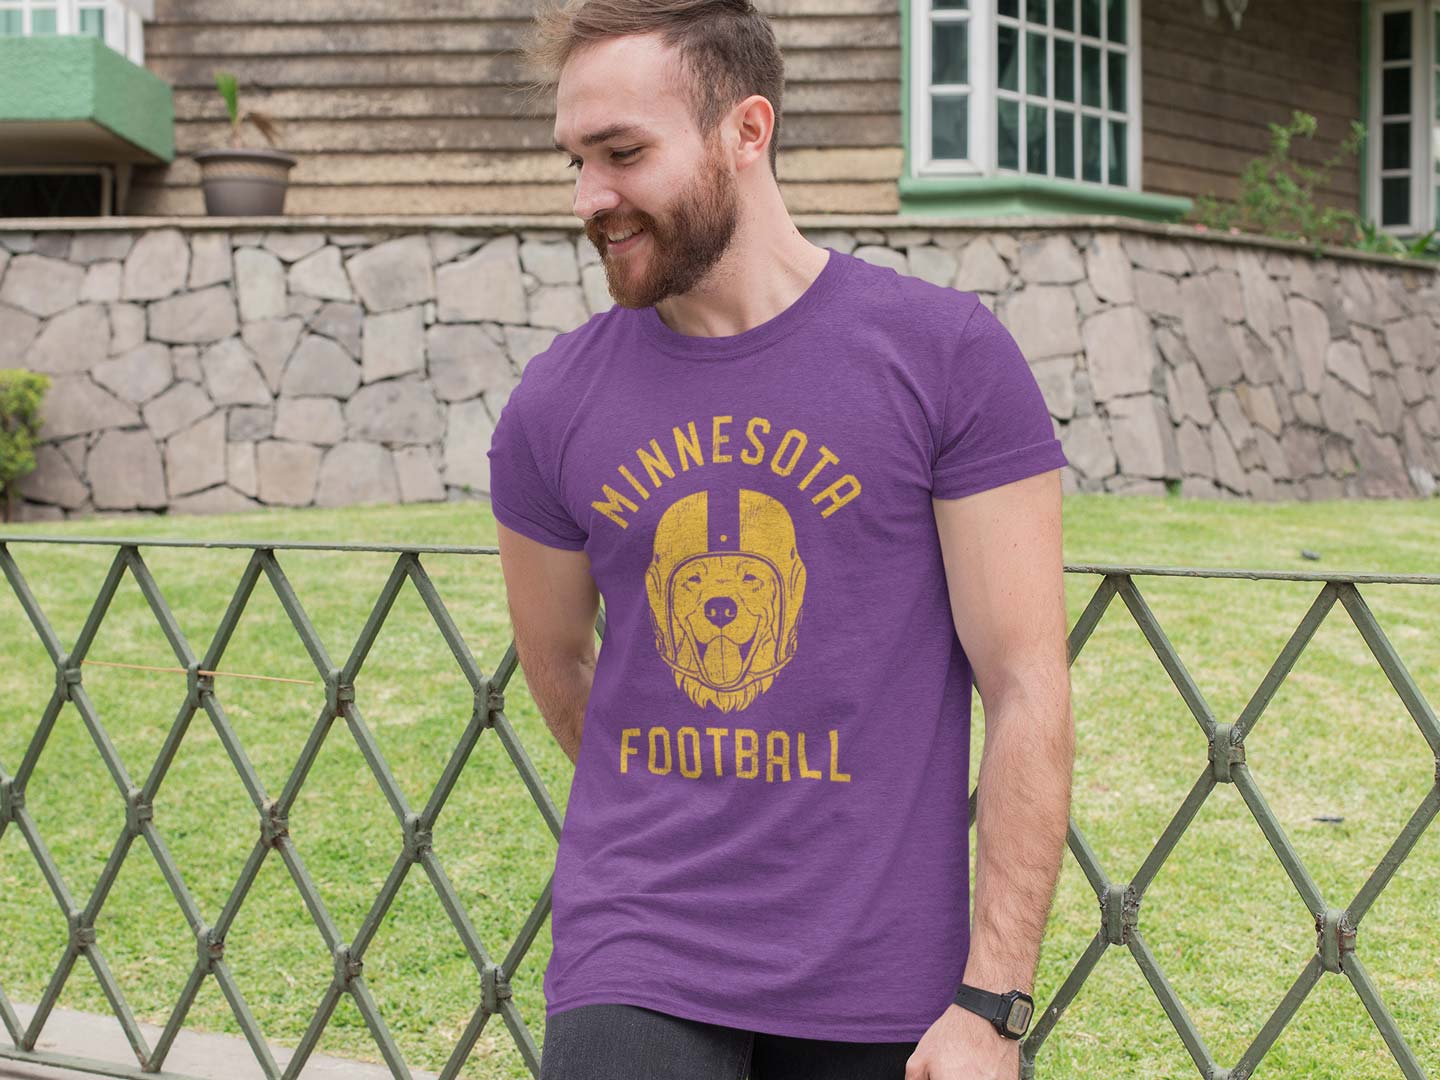 Minnesota Football Golden Retriever T-Shirt